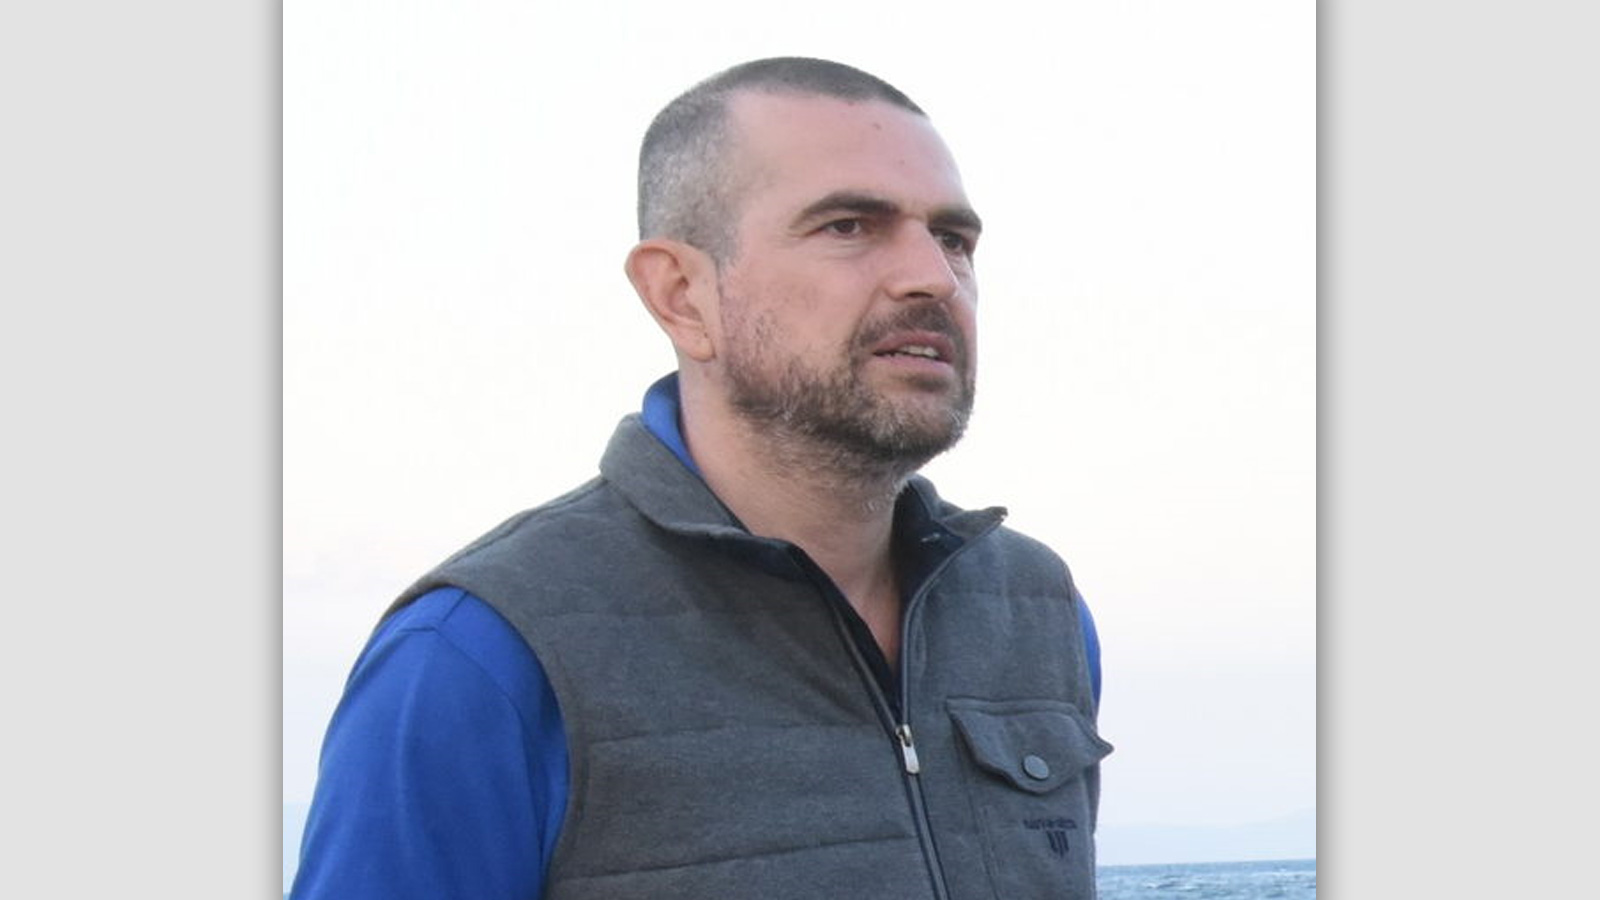 Έφυγε από την ζωή σε ηλικία 48 ετών ο δημοσιογράφος Φώτης Κοντόπουλος